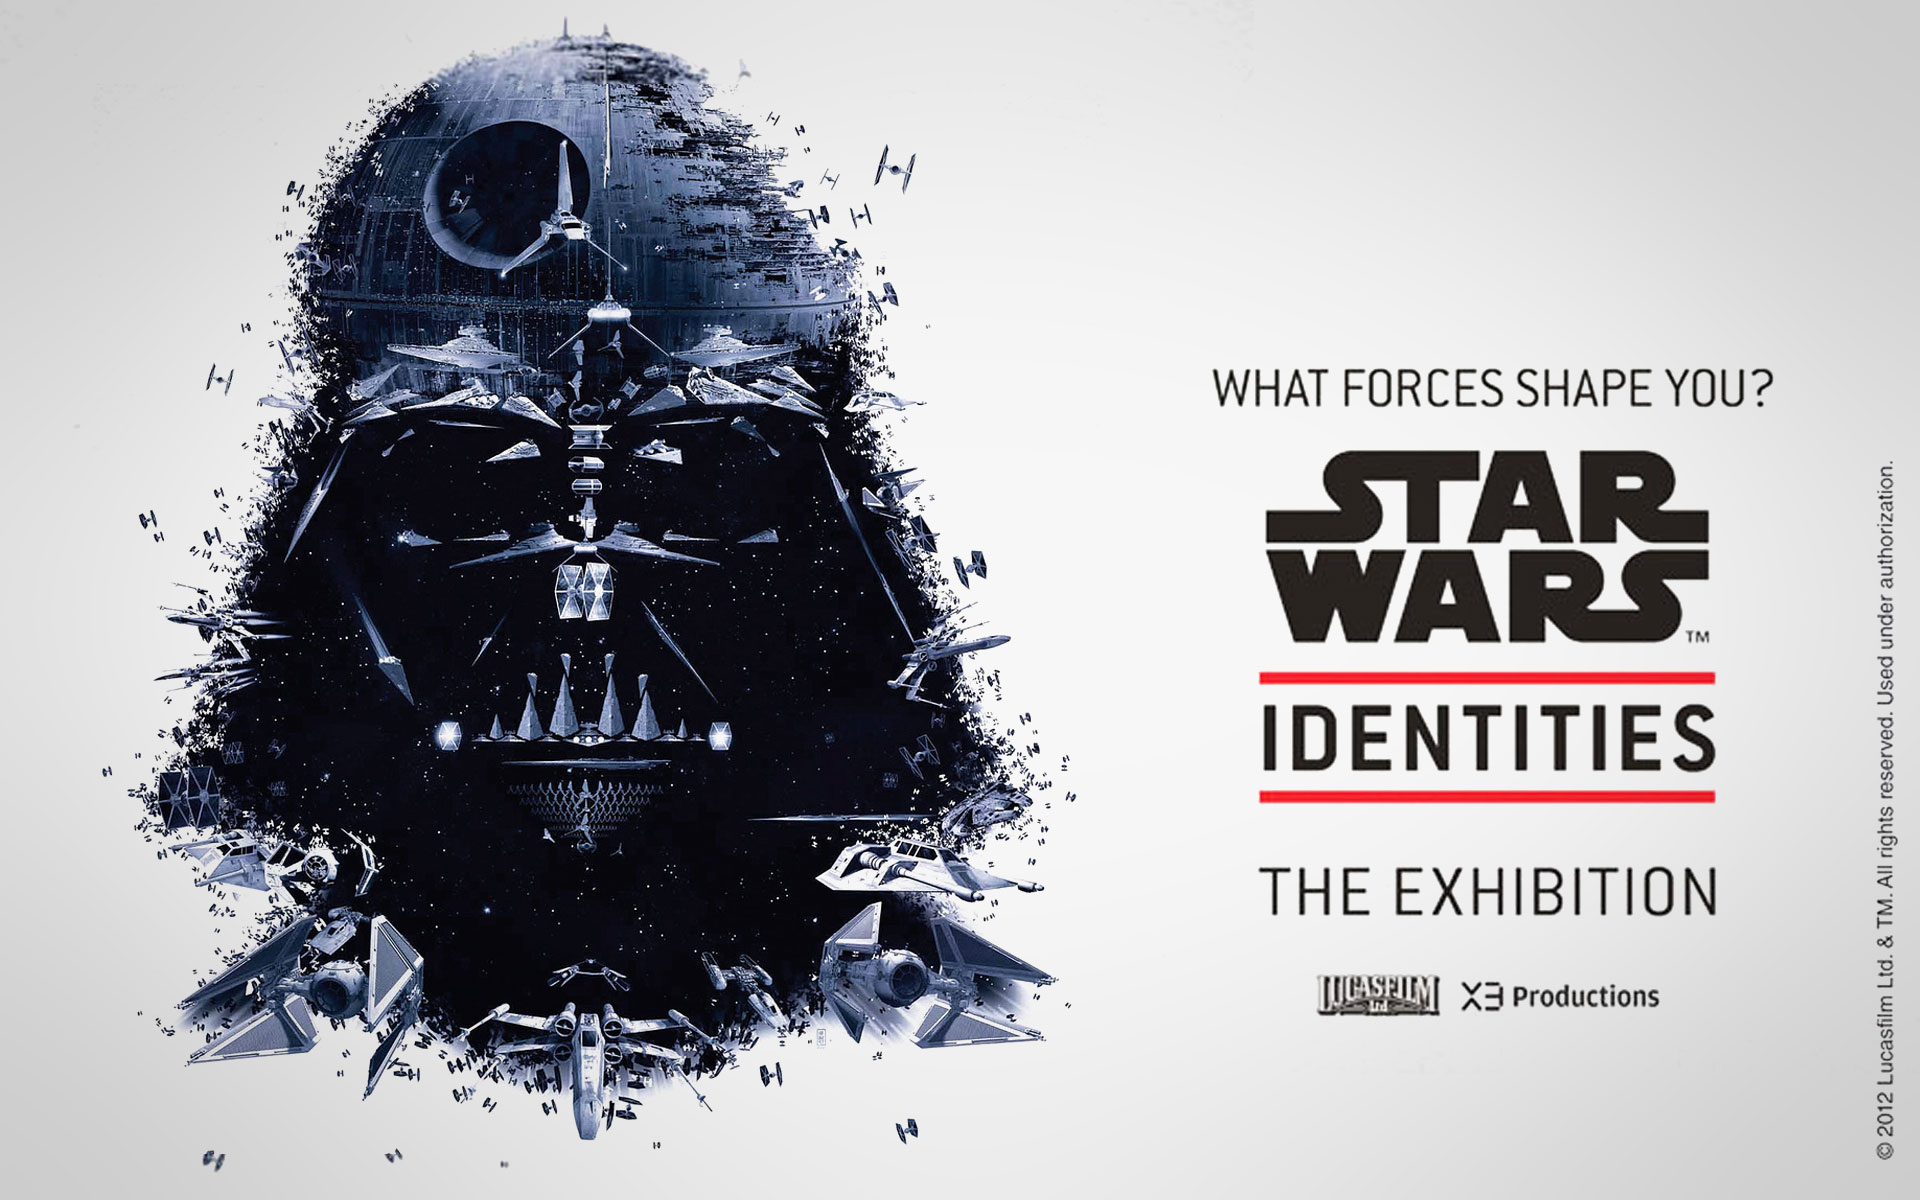 Star Wars Identities arriva in Europa a Parigi fino al 30 giugno